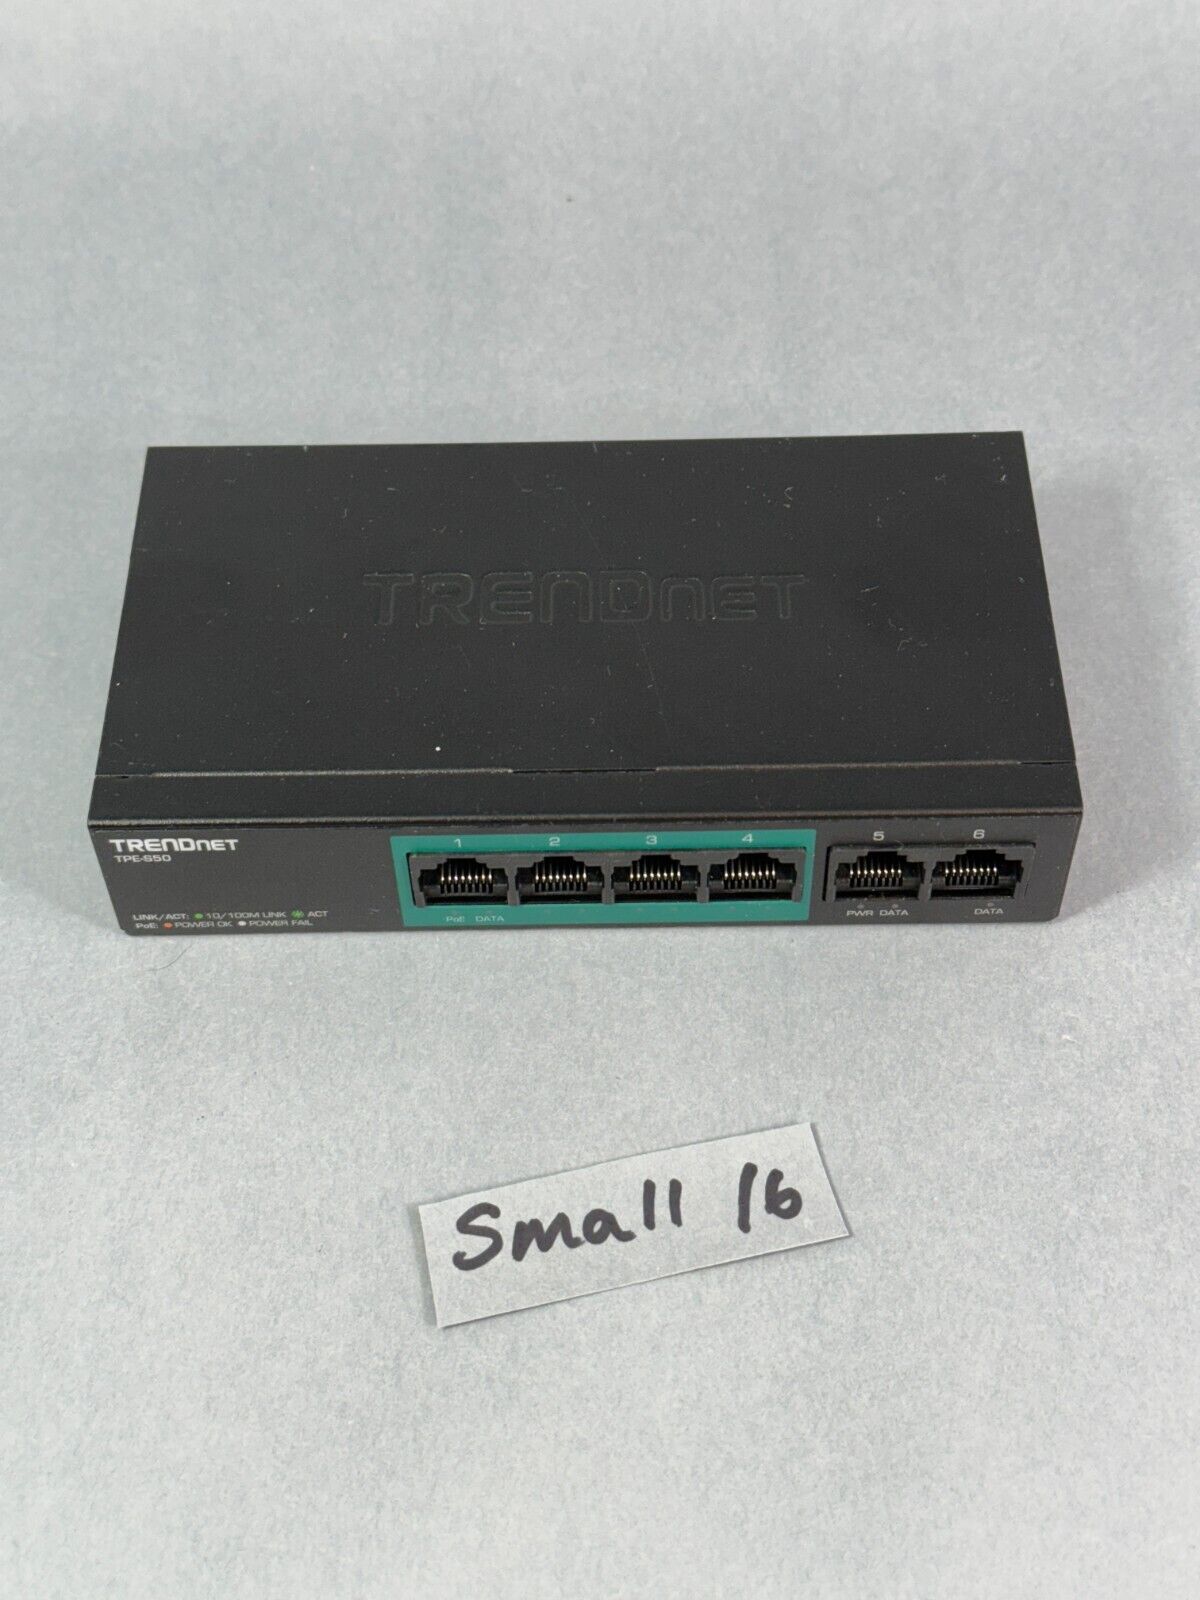 TRENDnet 6 Port TPE S50 6-Port 10/100 Mbps  PoE Switch, model TPE-S50